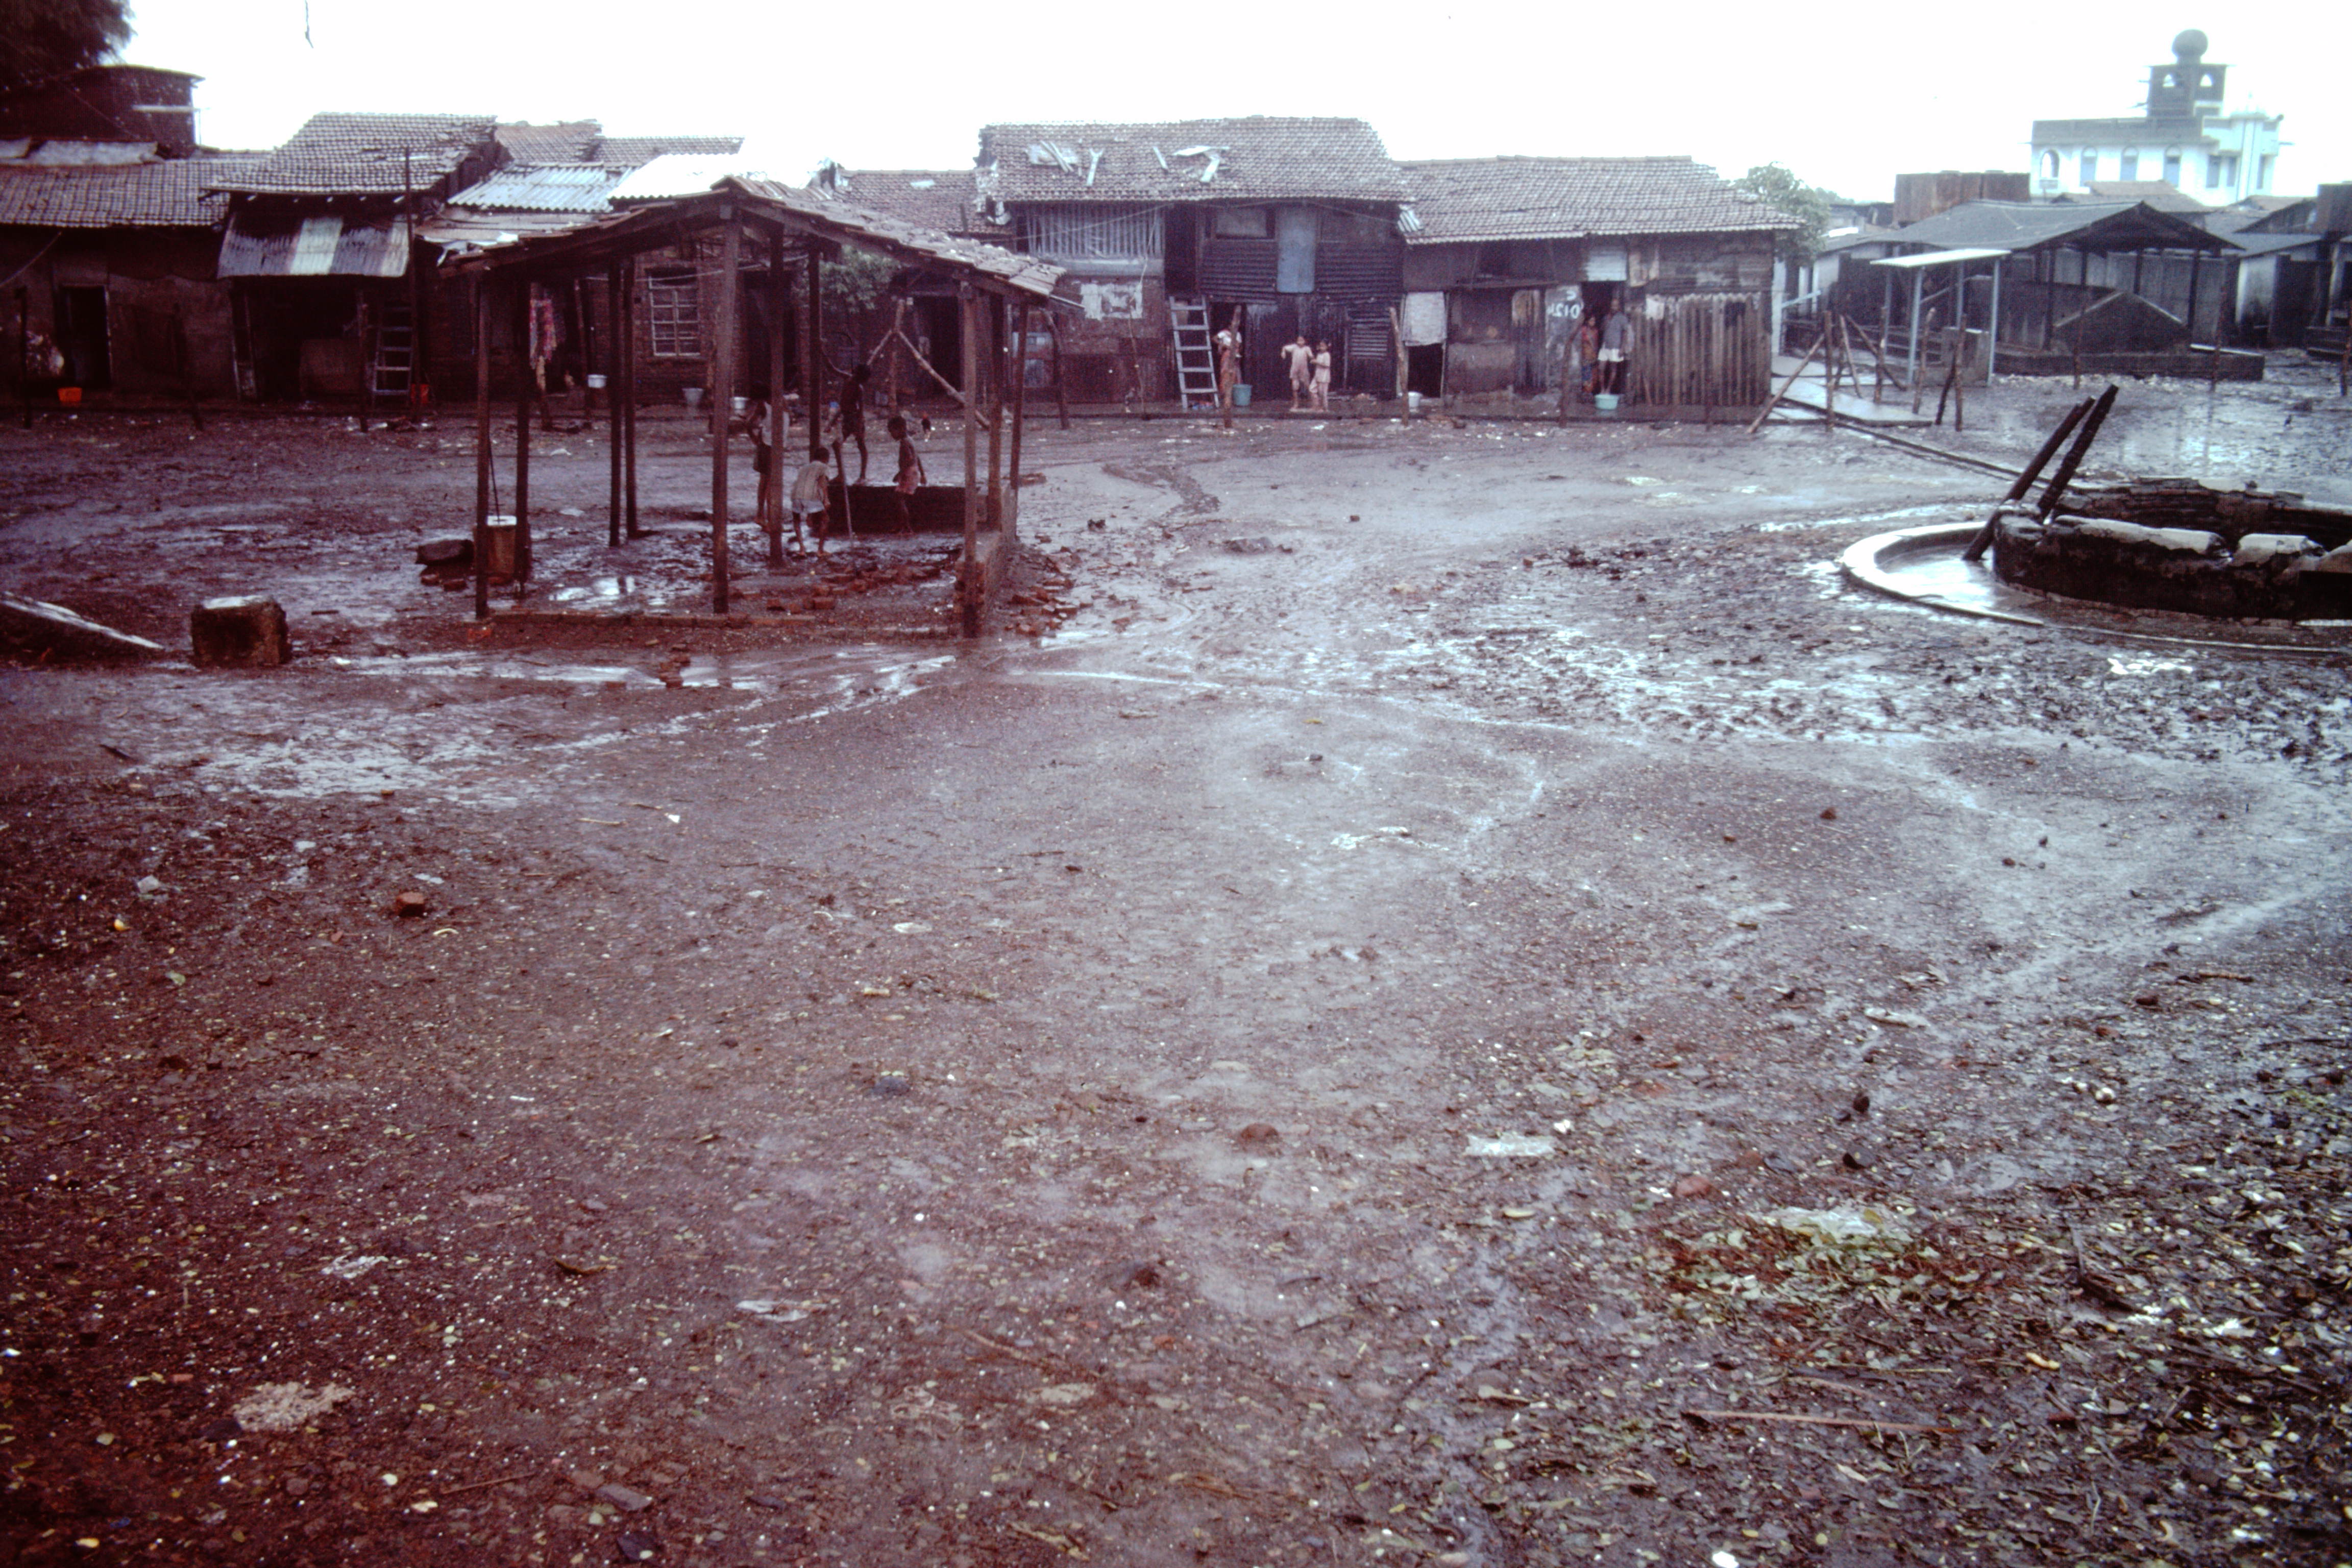 Slums-of-Mumbai-1979-open-space-IHS-87-17.jpeg